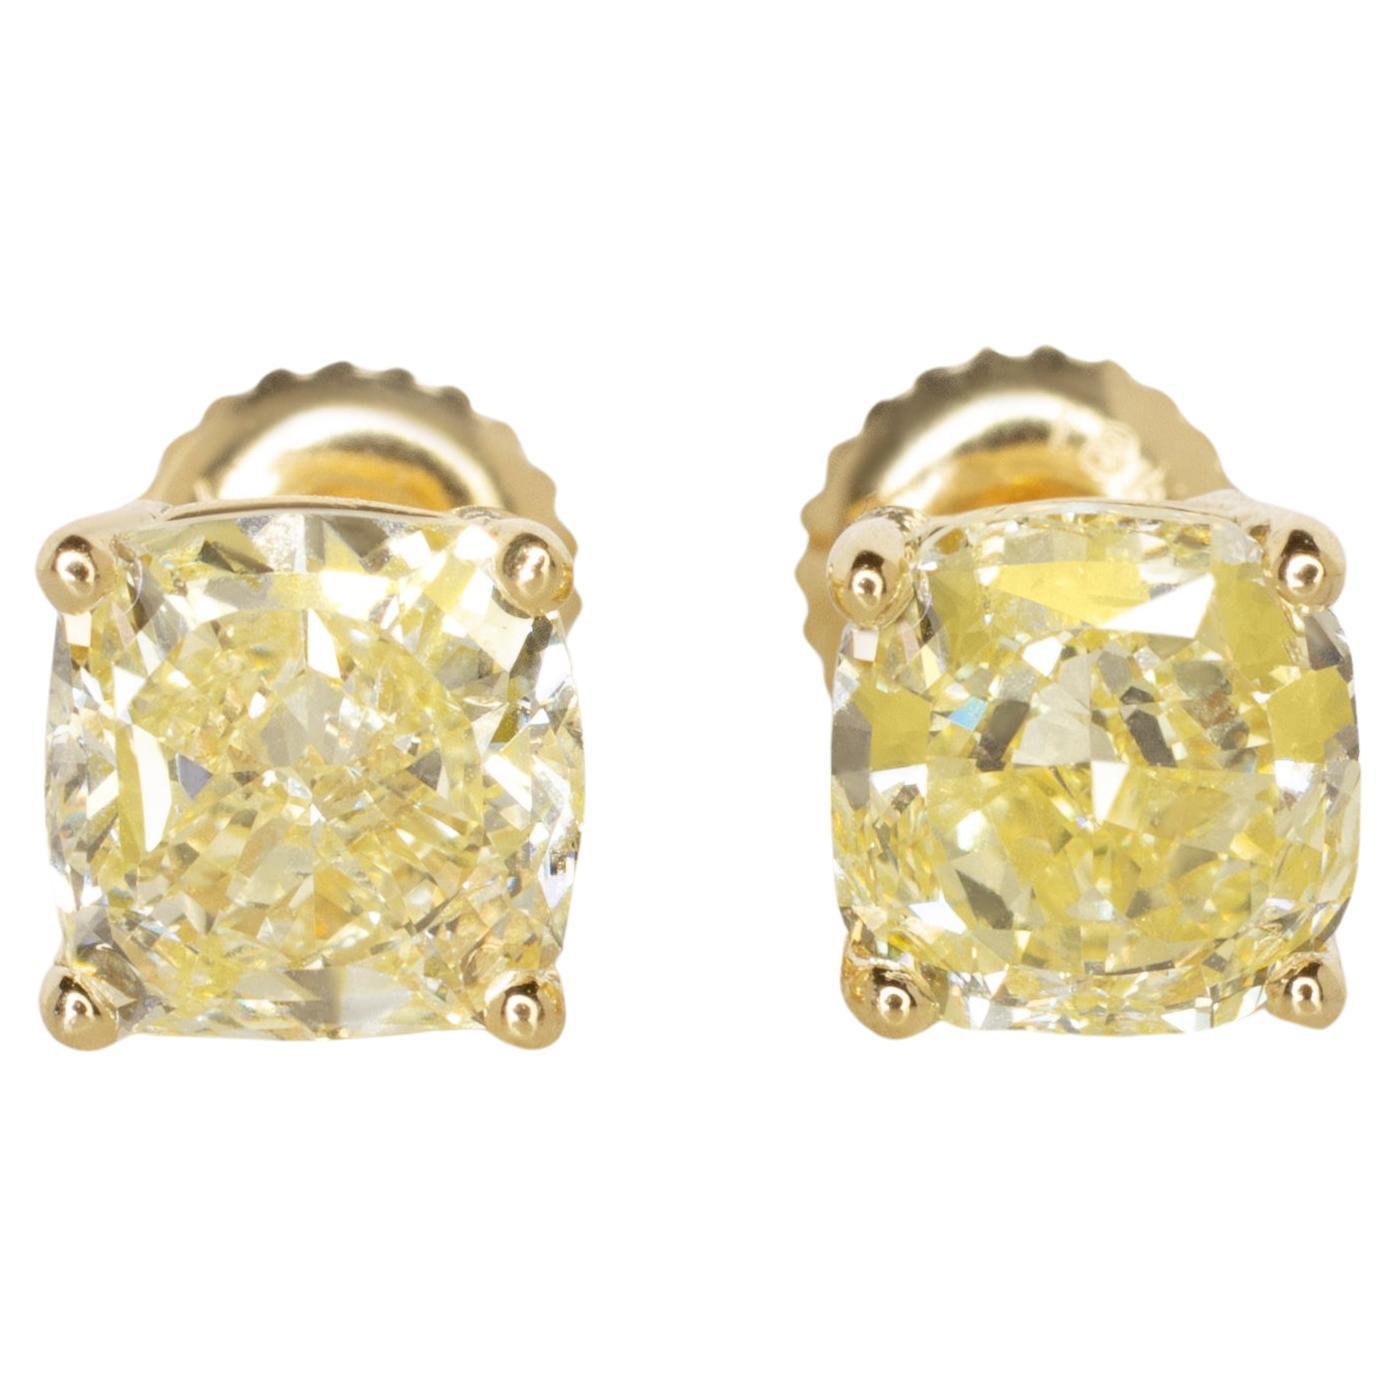 GIA Certified 2 Carat Cushion Cut Fancy Yellow IF/VVS1 Diamond Studs Gold Ring